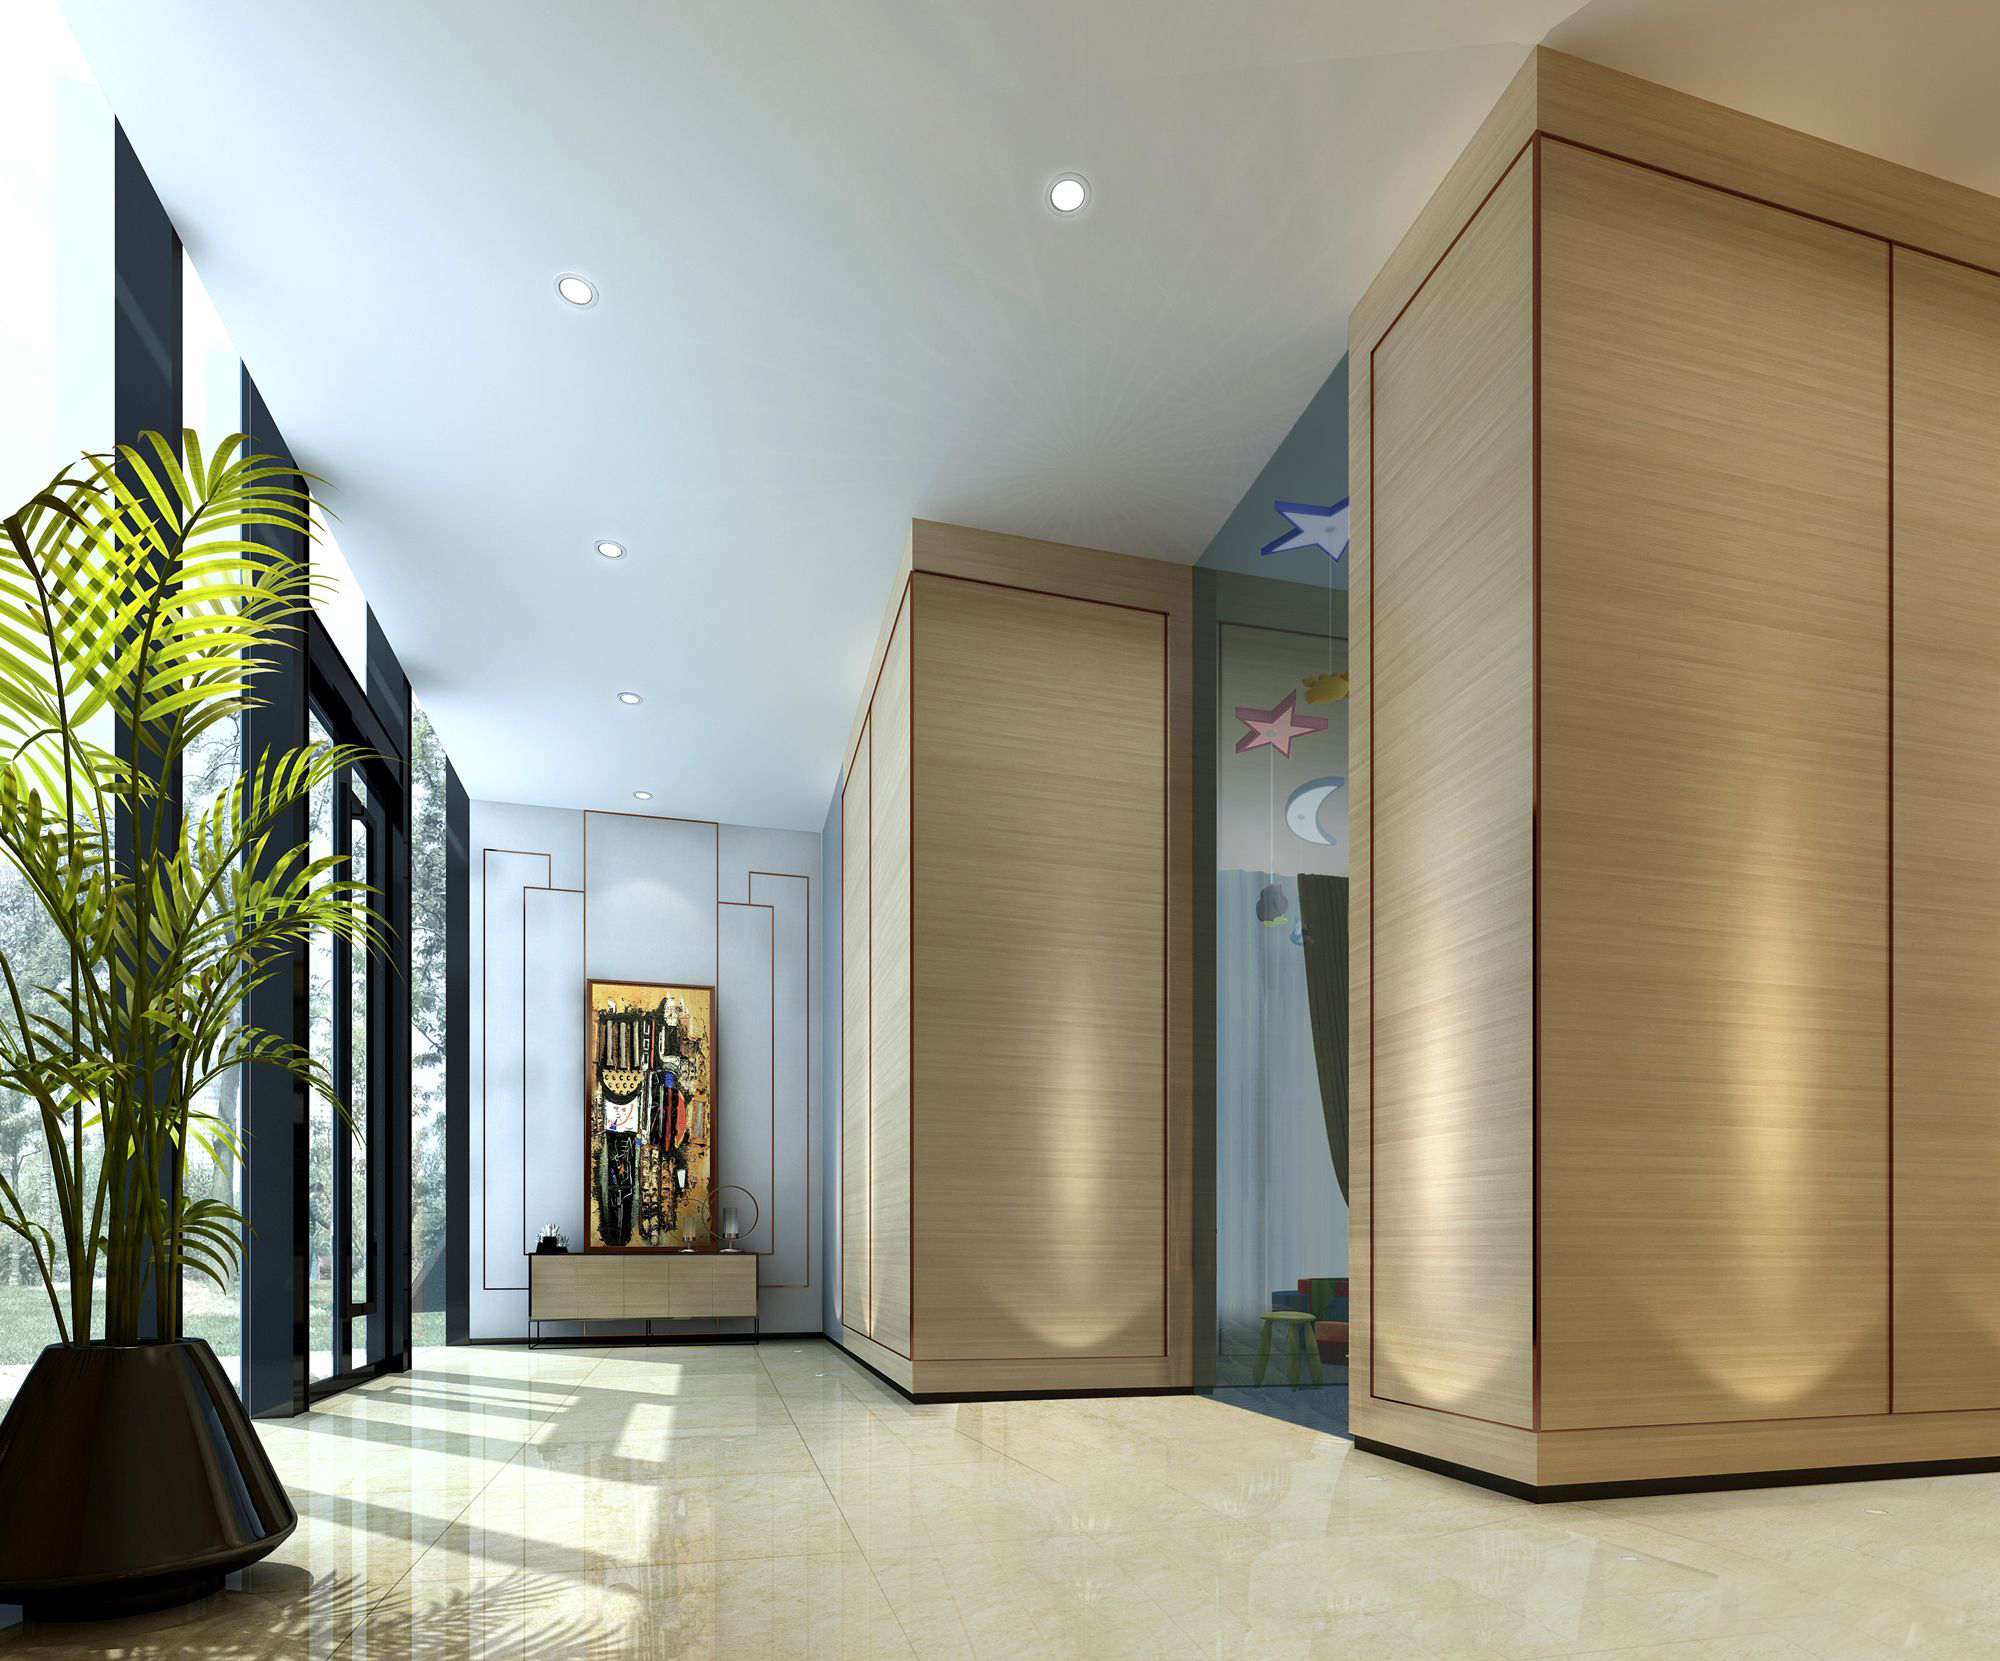 售楼处设计欧式中式现代高清售楼部效果图3D效果图-28